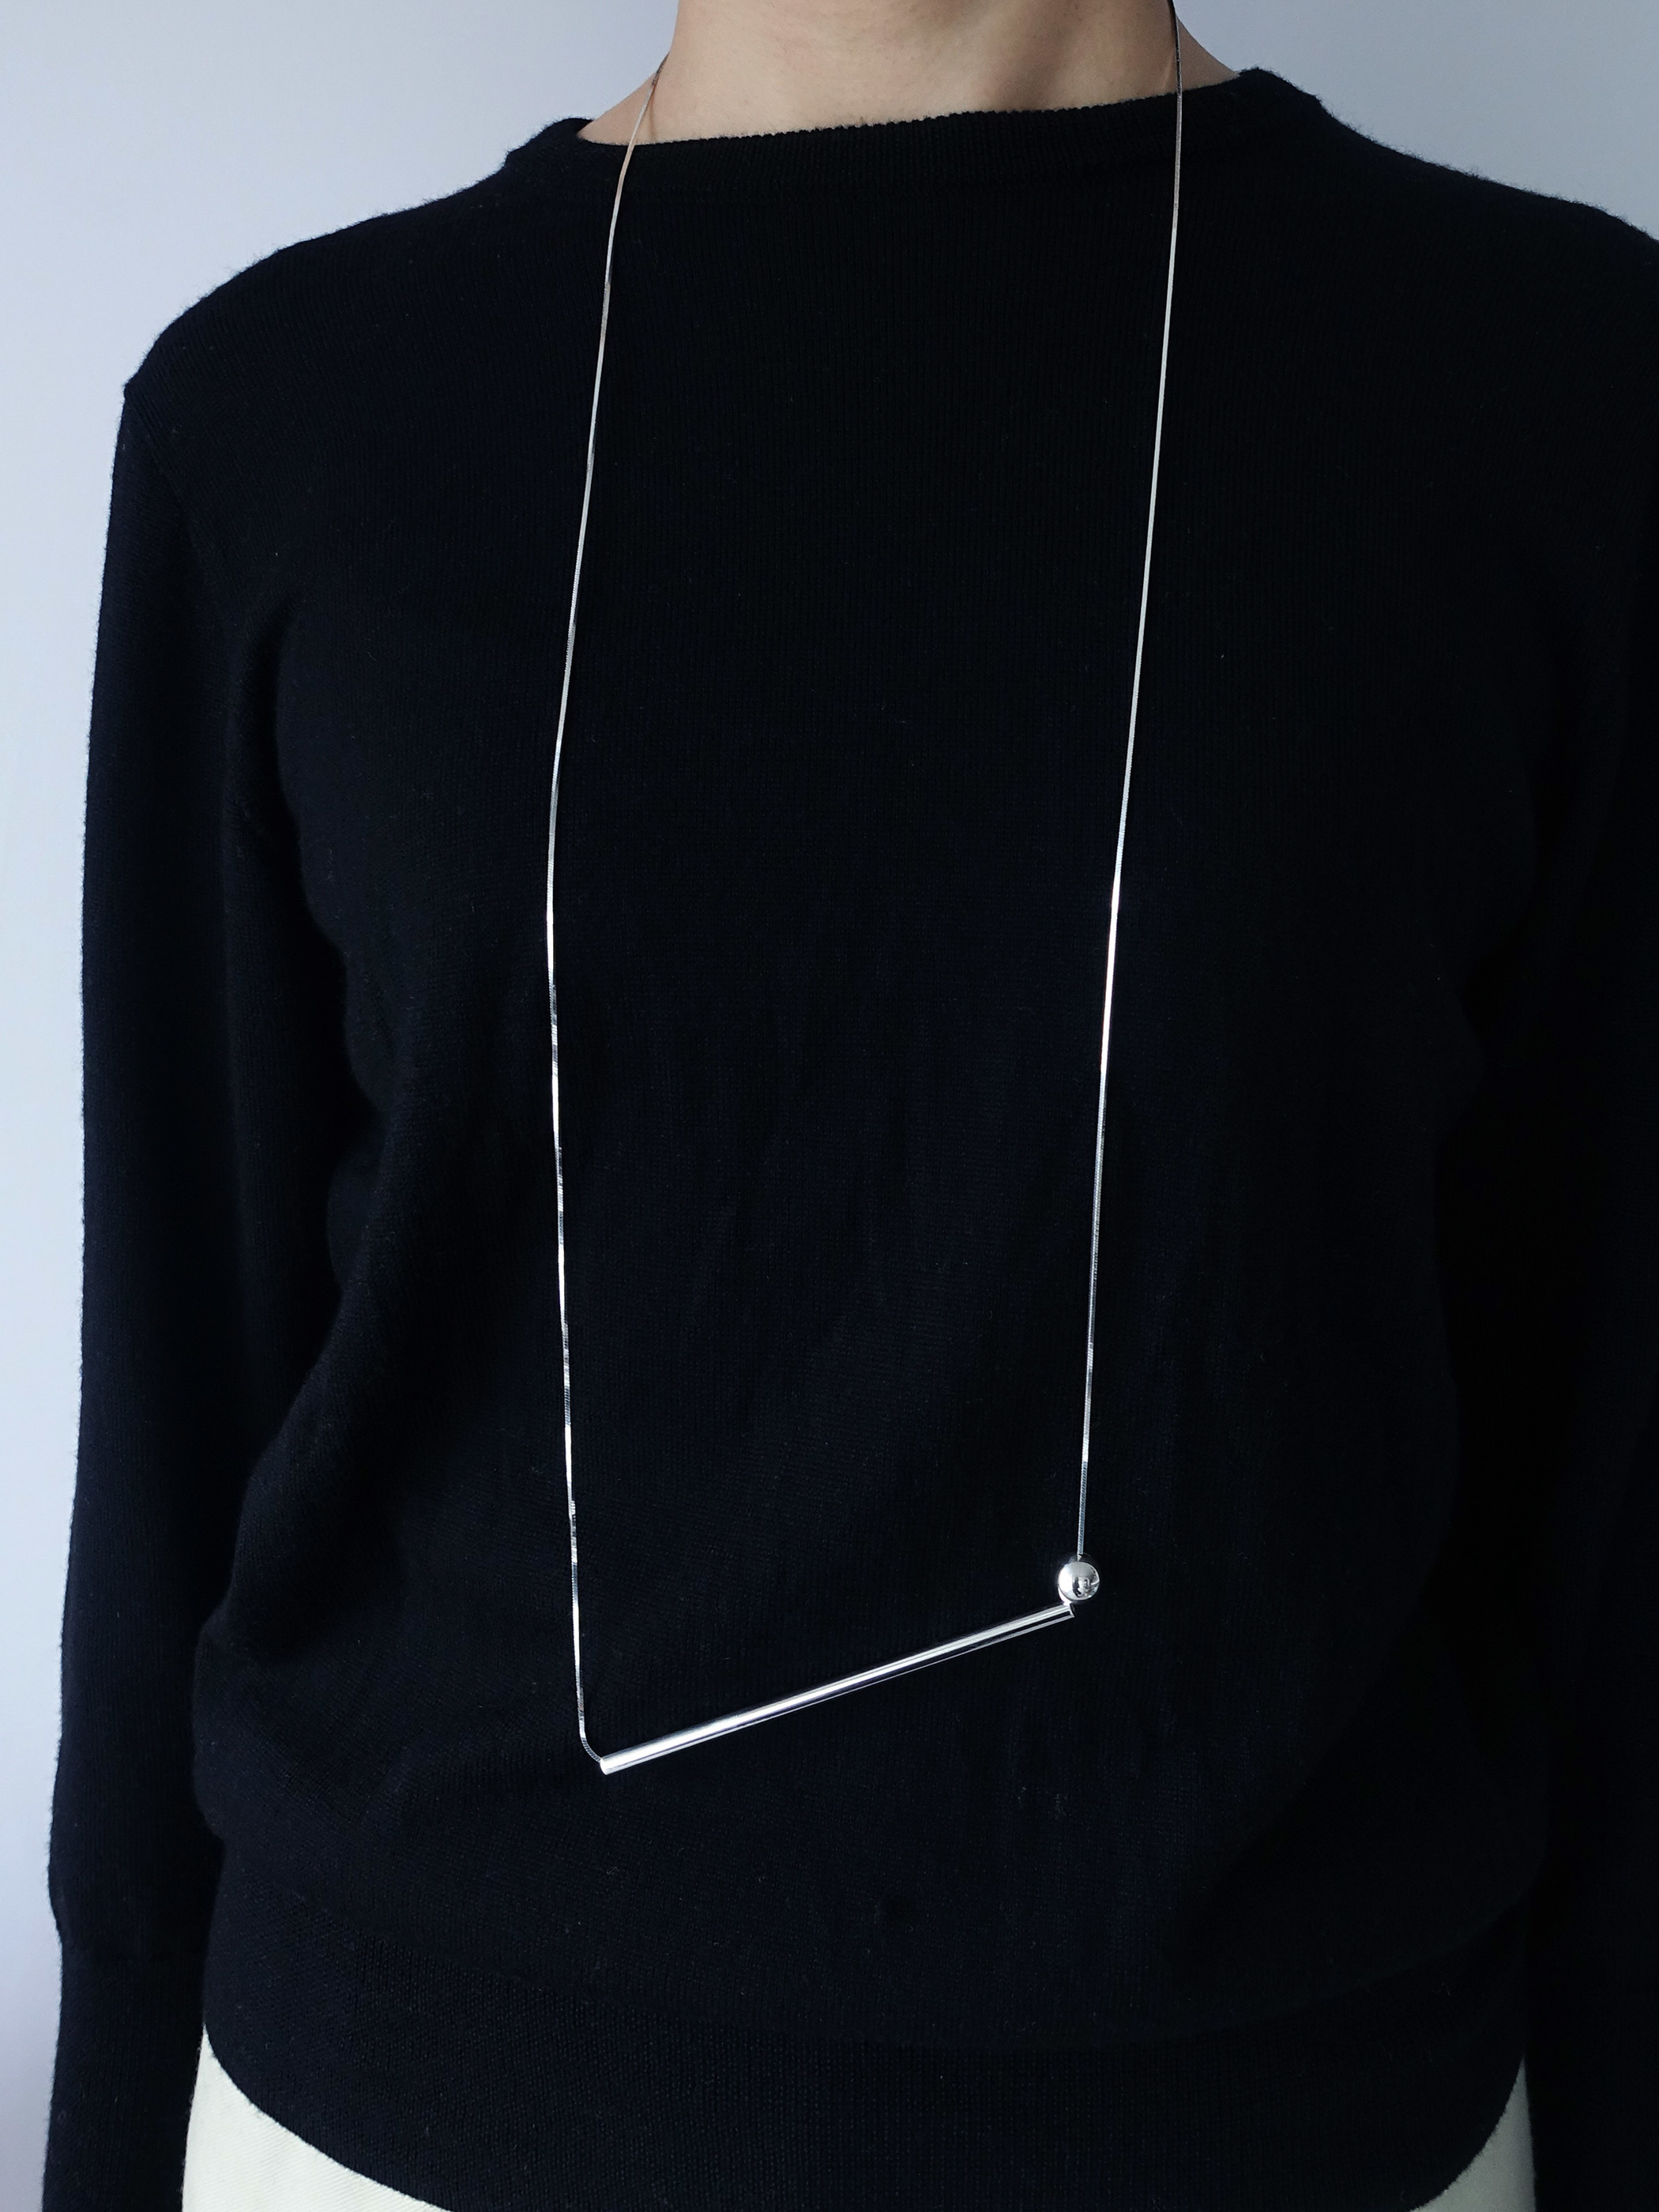 〈FLOW〉build necklace